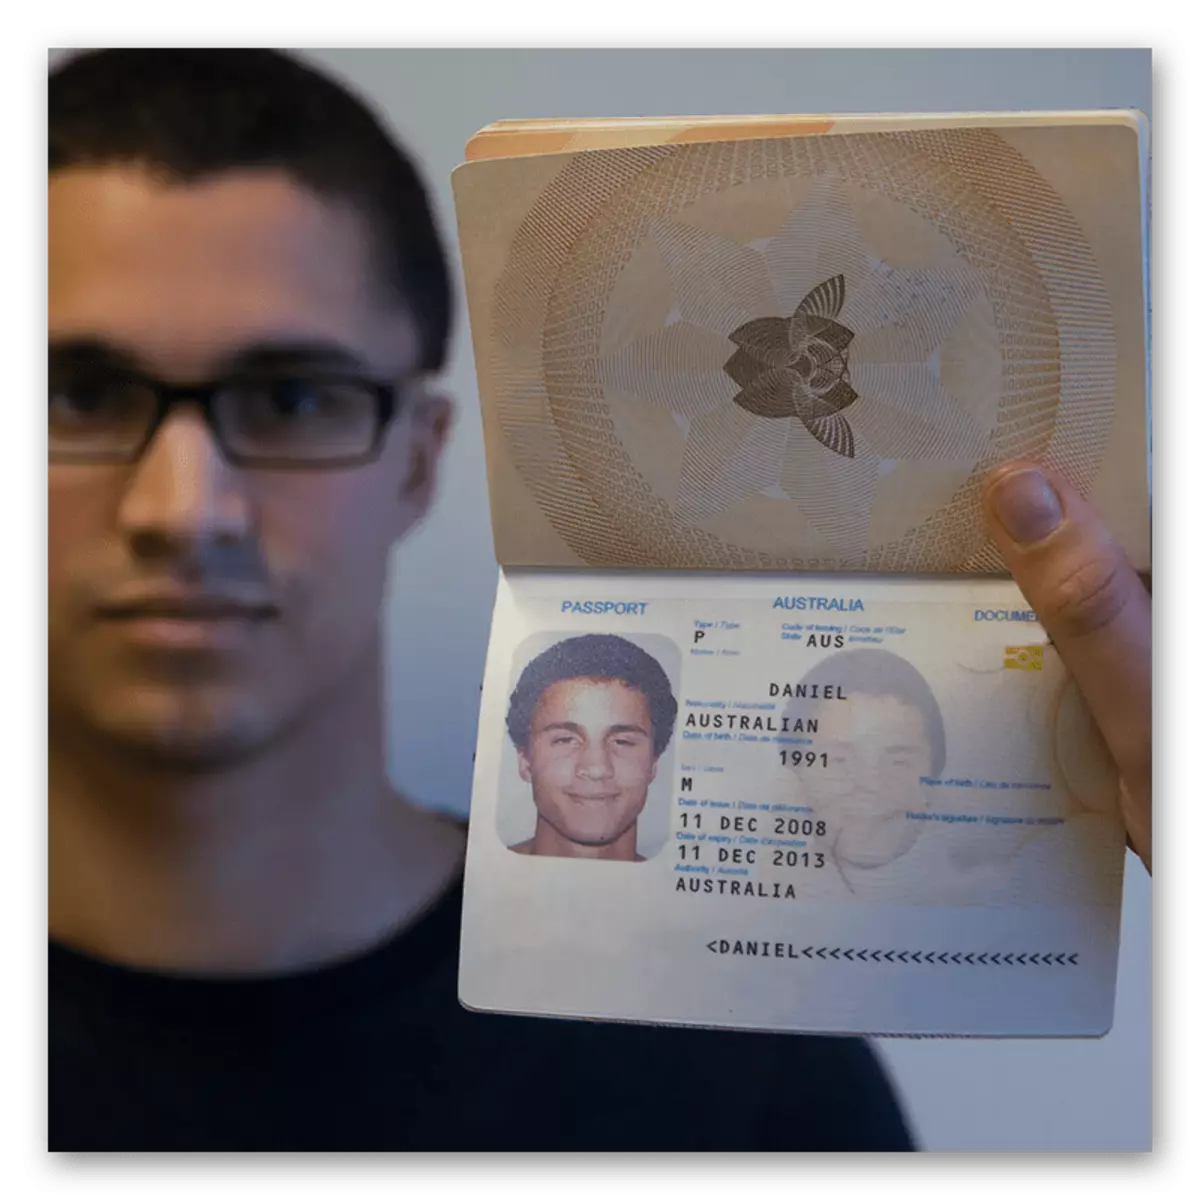 उम्र बदलते समय विवाद का समर्थन करने के लिए एक पासपोर्ट के साथ फोटोग्राफी